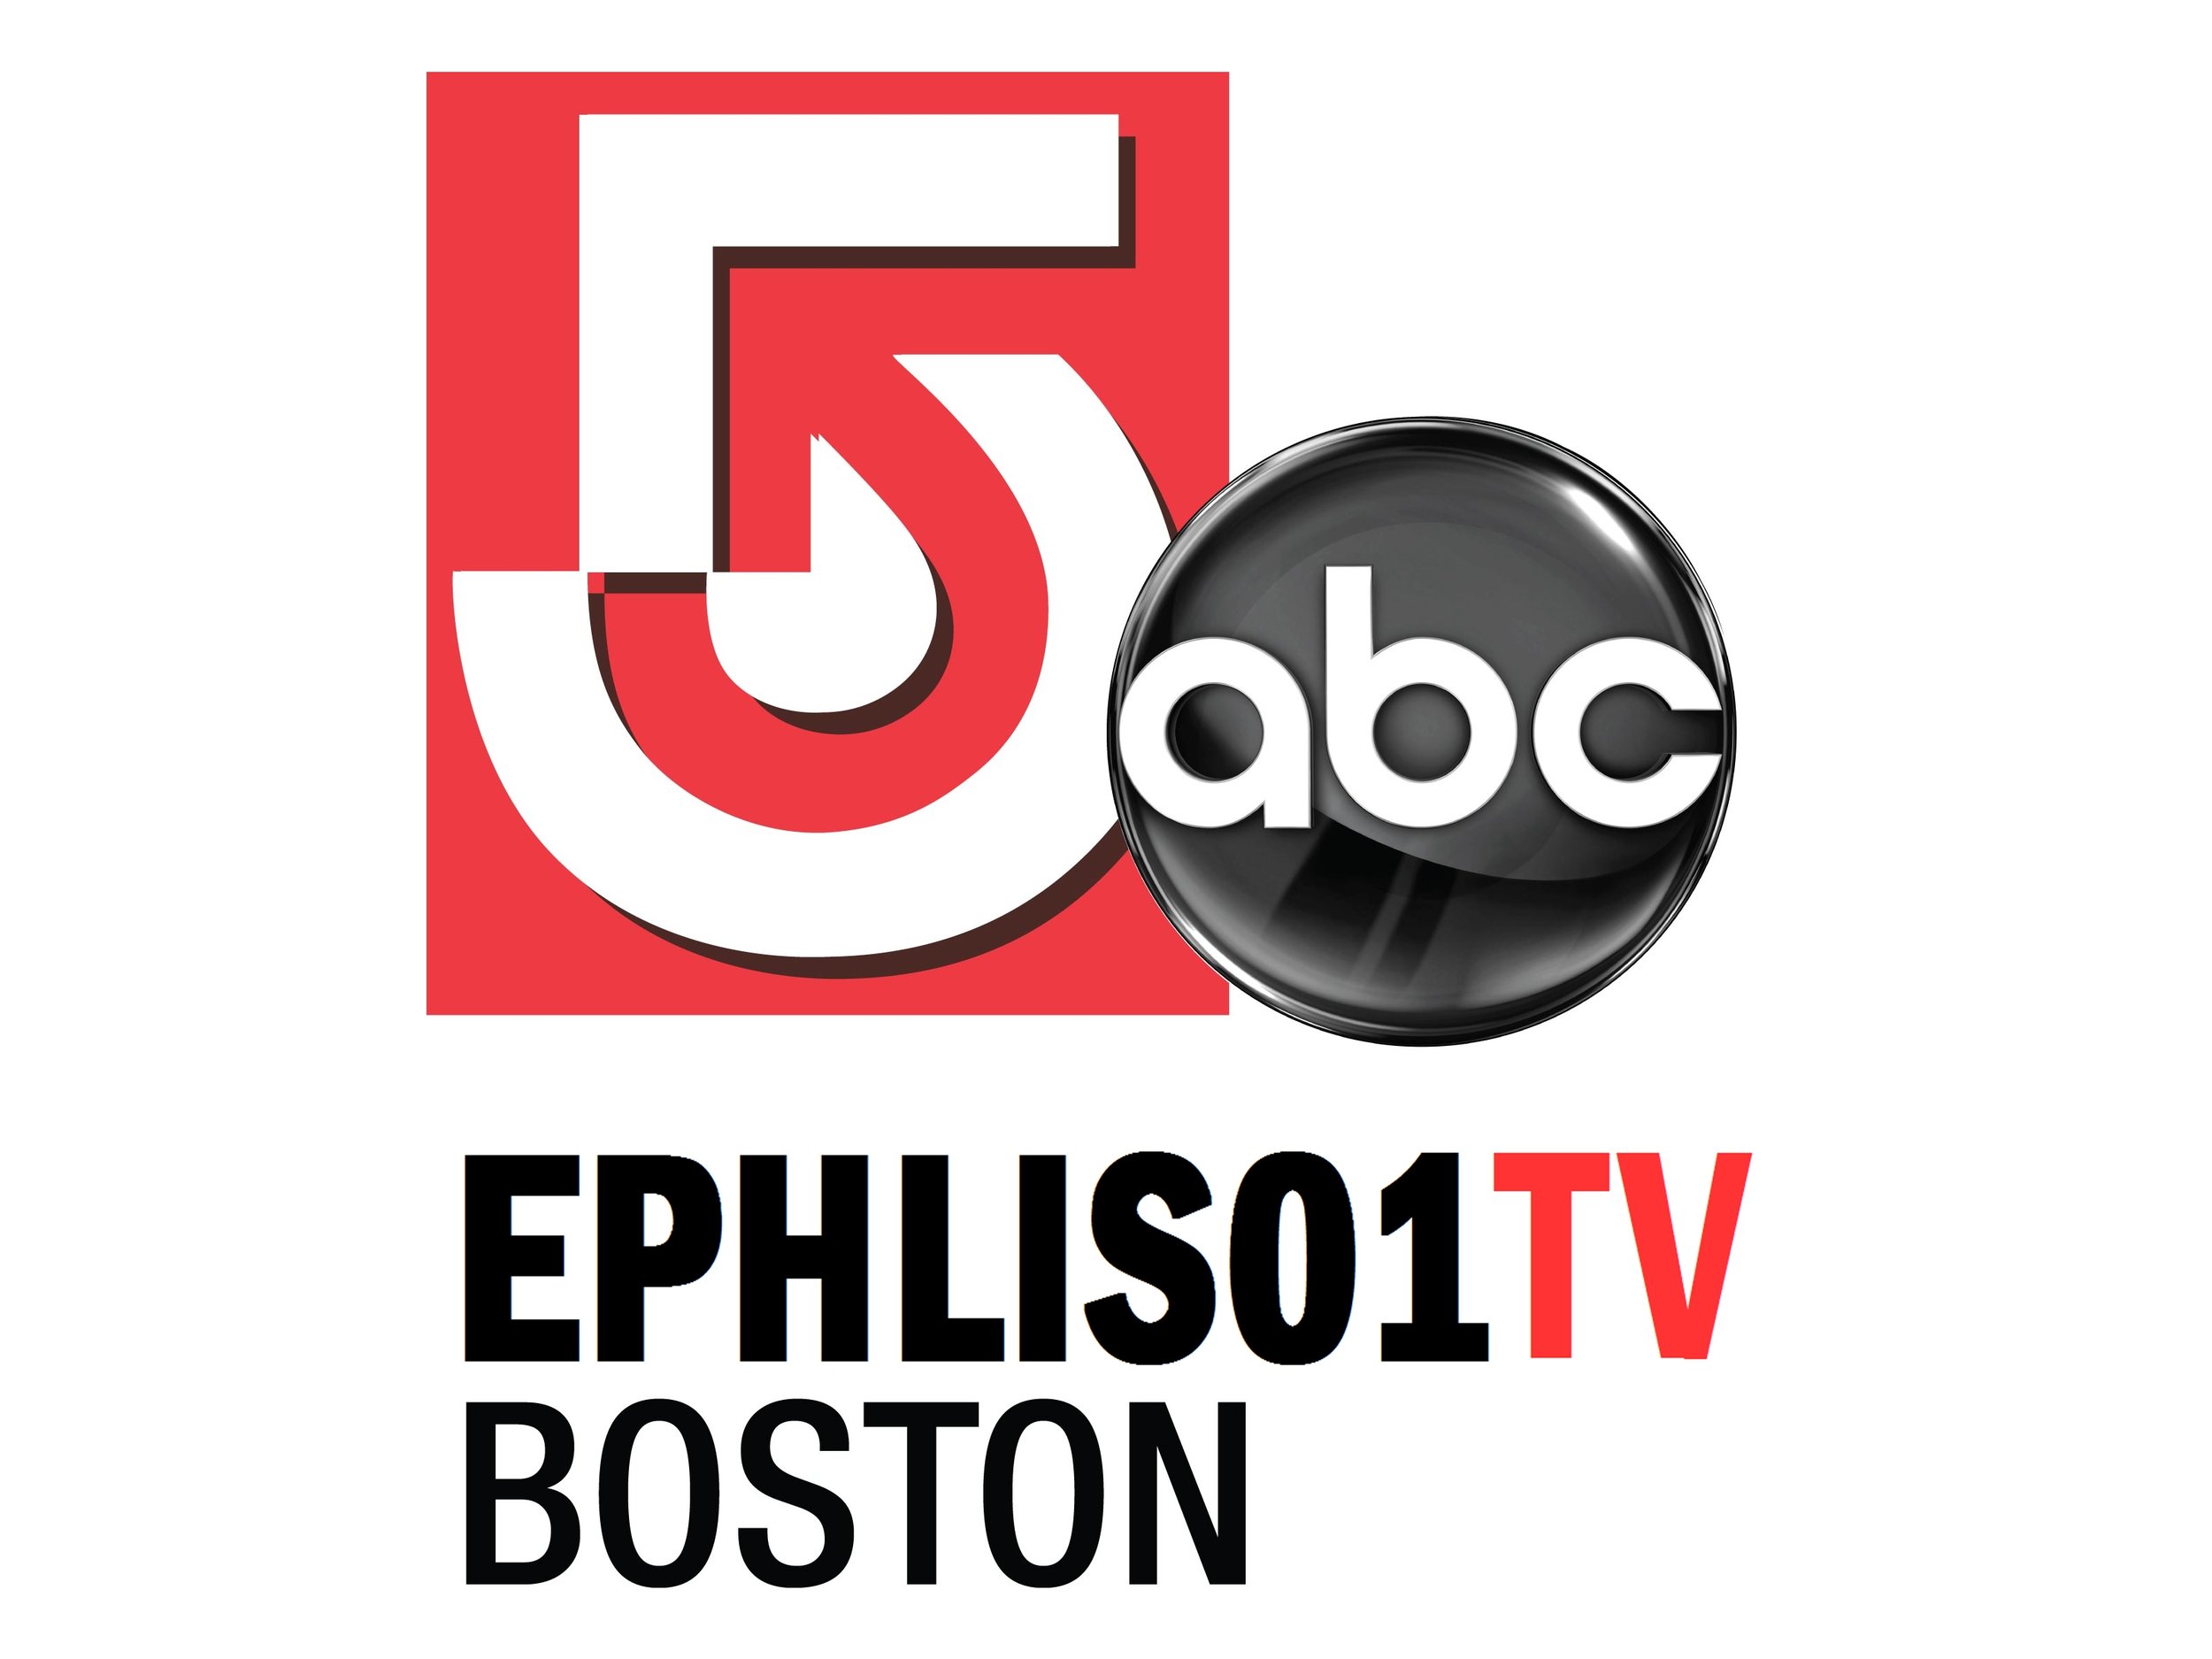 EPHLIS01 TV BOSTON.jpg